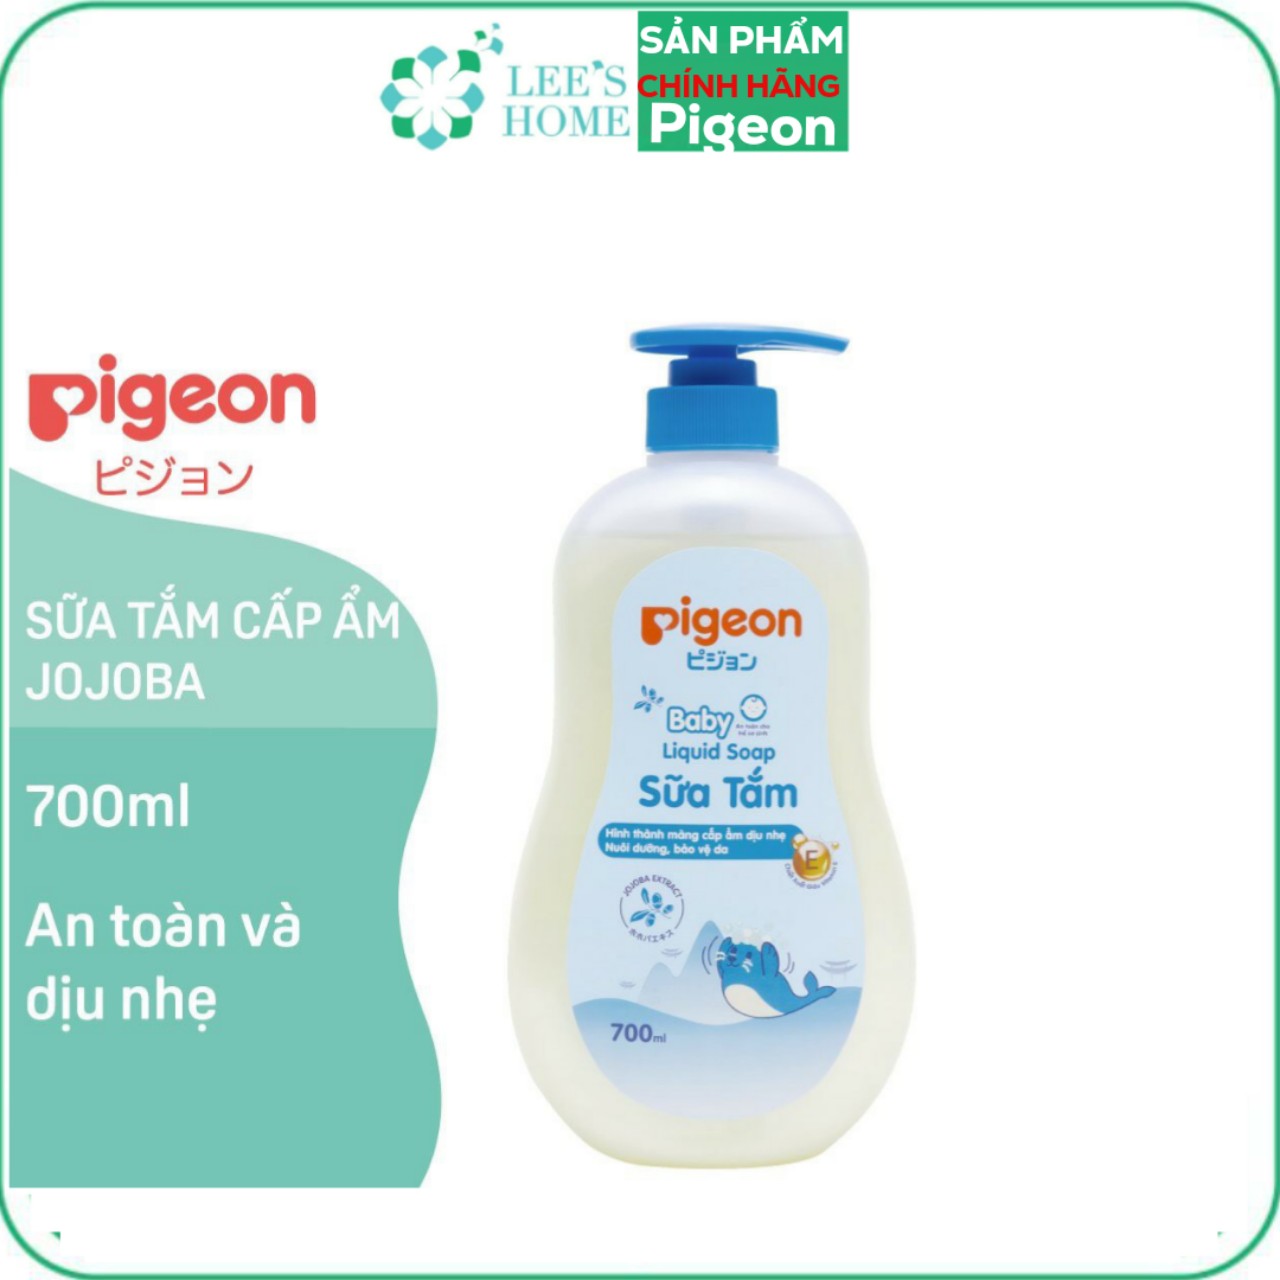 Sữa Tắm Pigeon cho bé 700ml - Dầu gội Pigeon 700ml cho bé - DAYSOFF